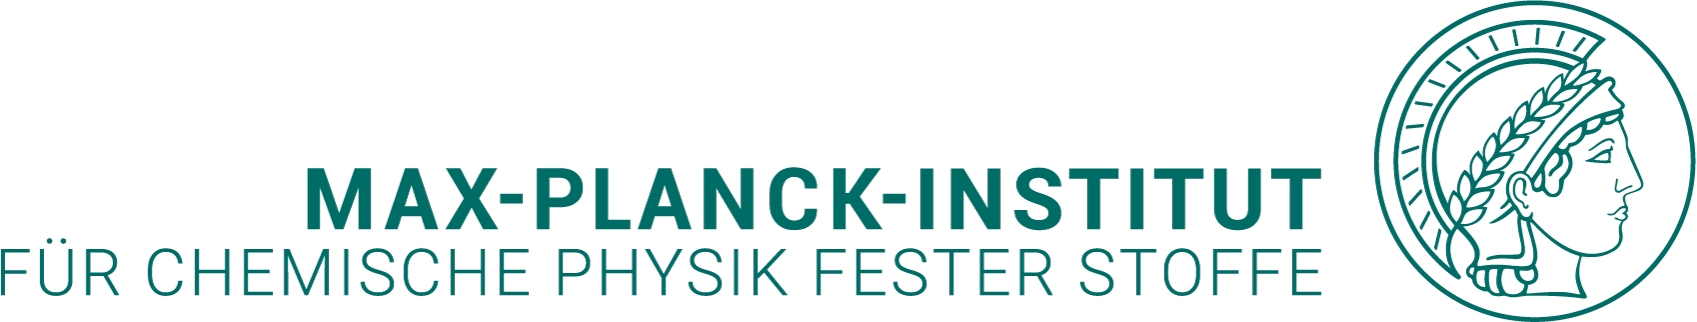 Logo: Max-Planck-Institut für Chemische Physik fester Stoffe